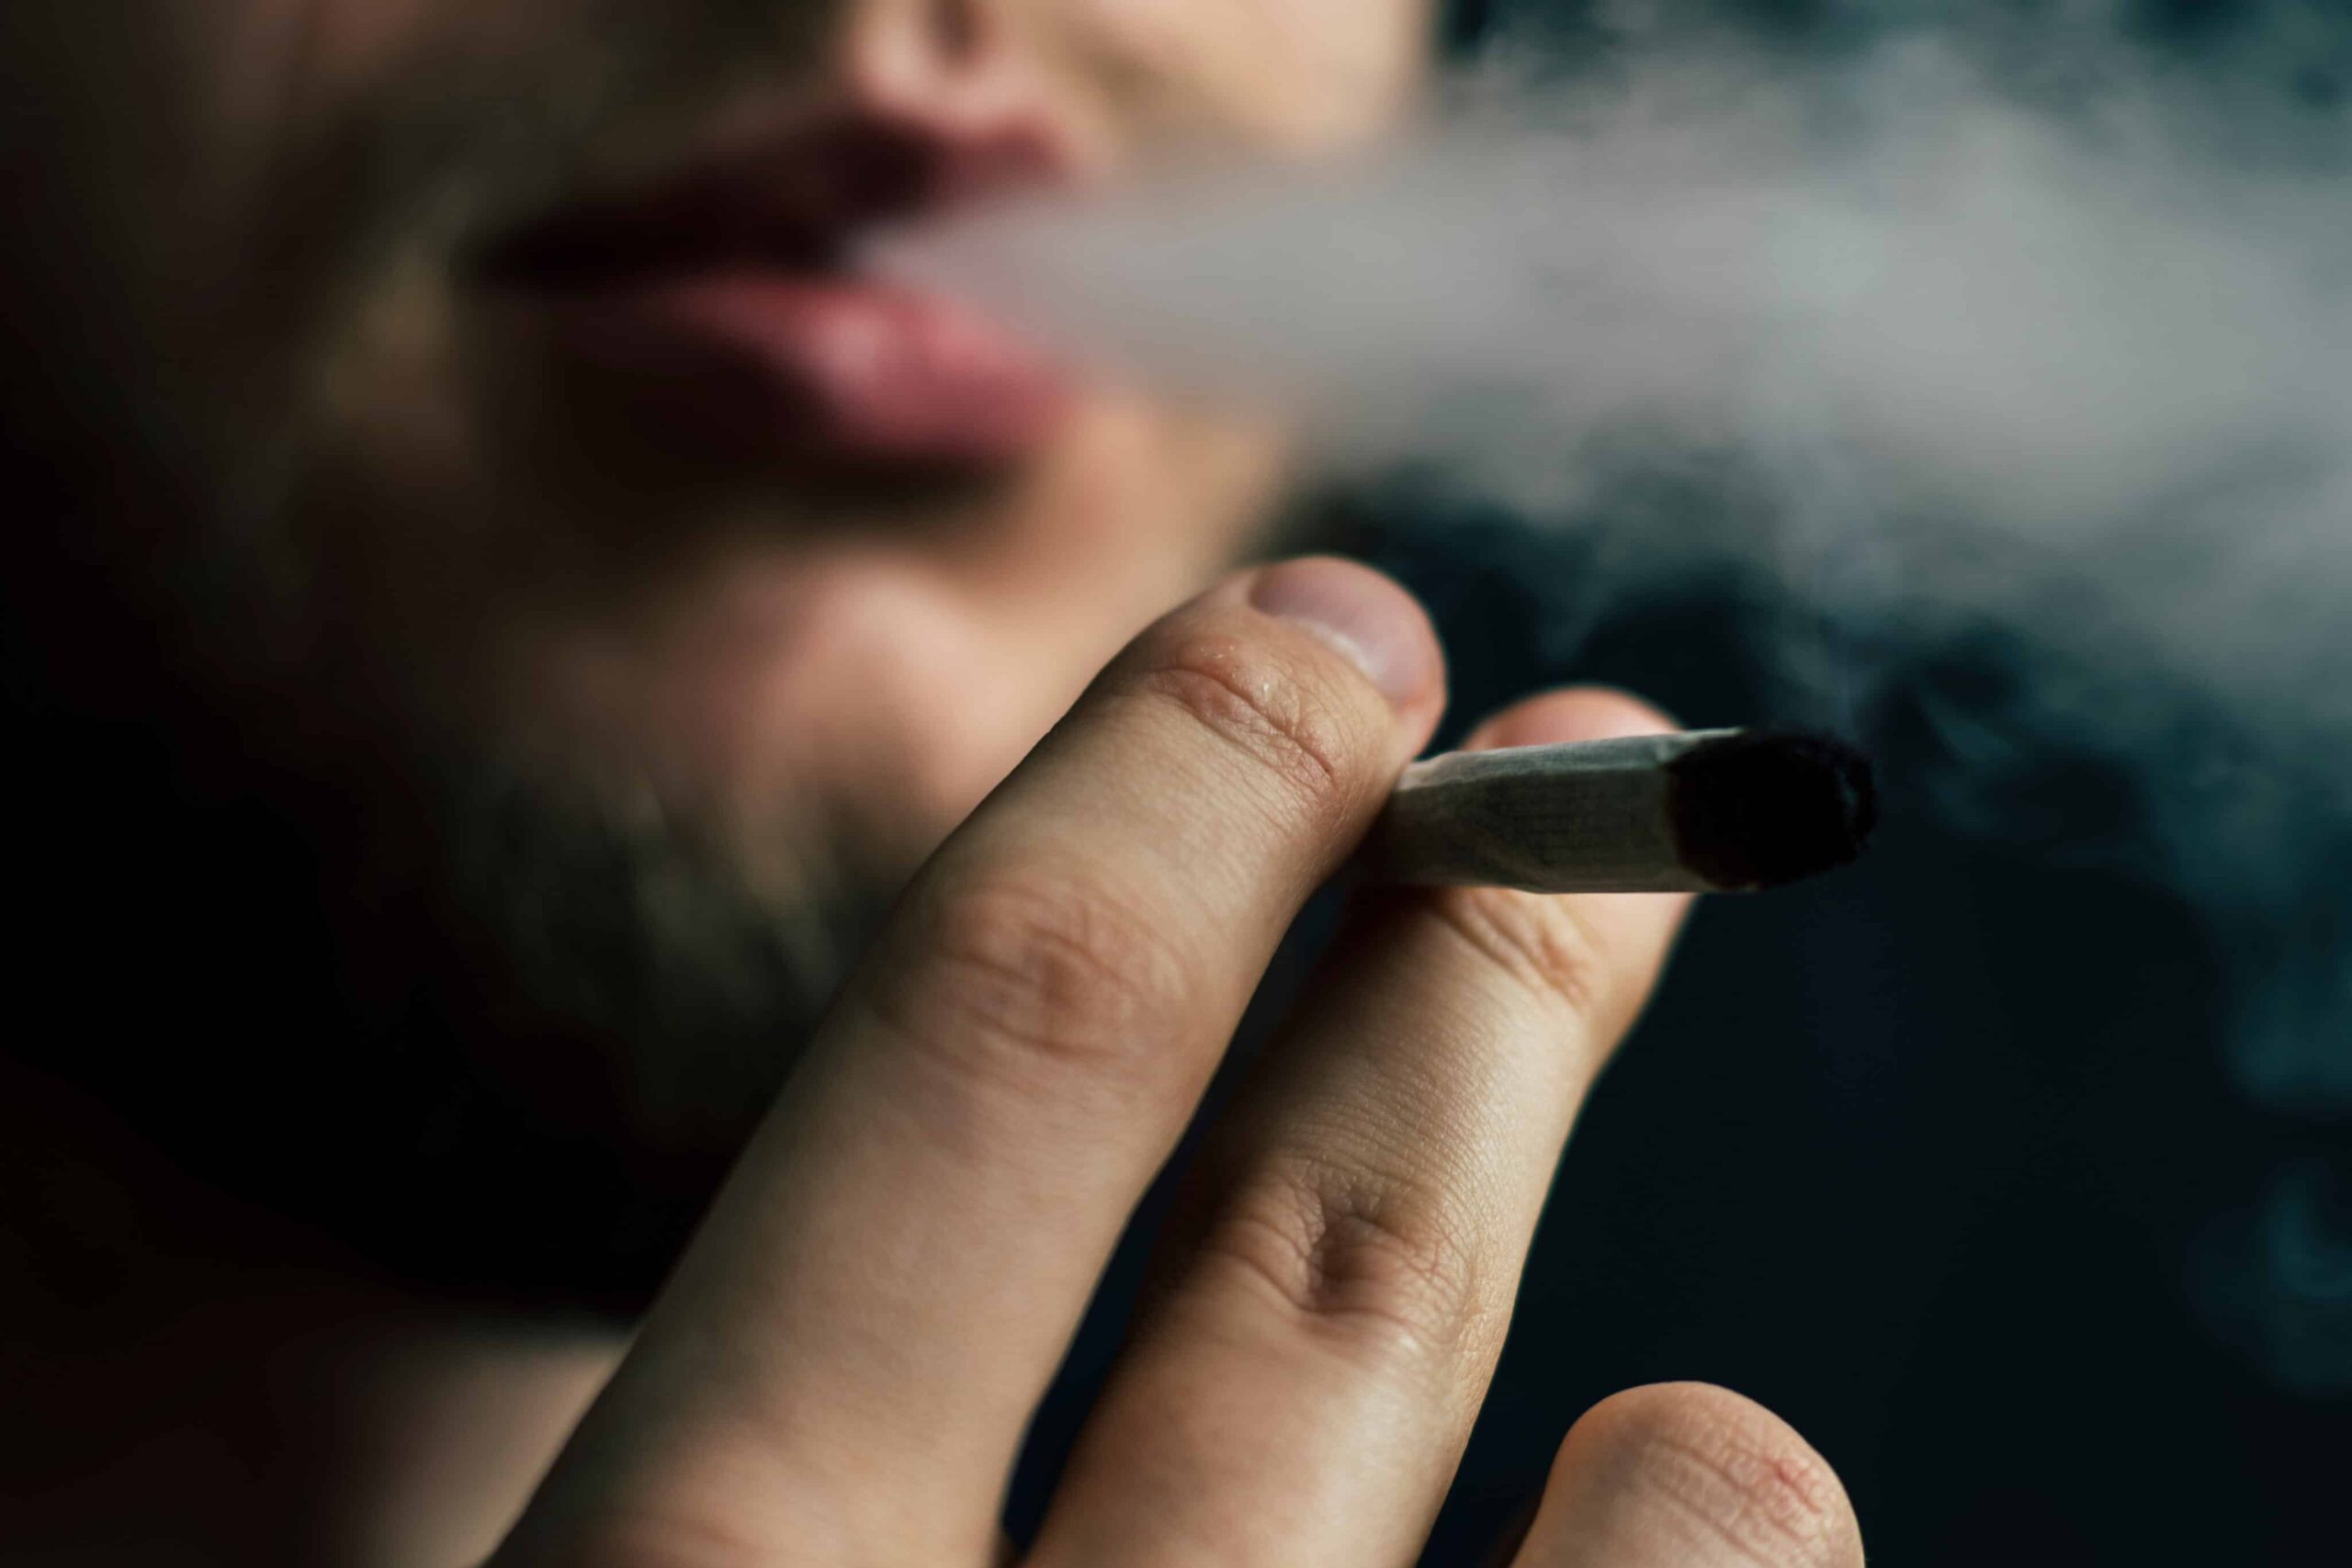 研究发现 14% 的人因工作受伤而吸食大麻